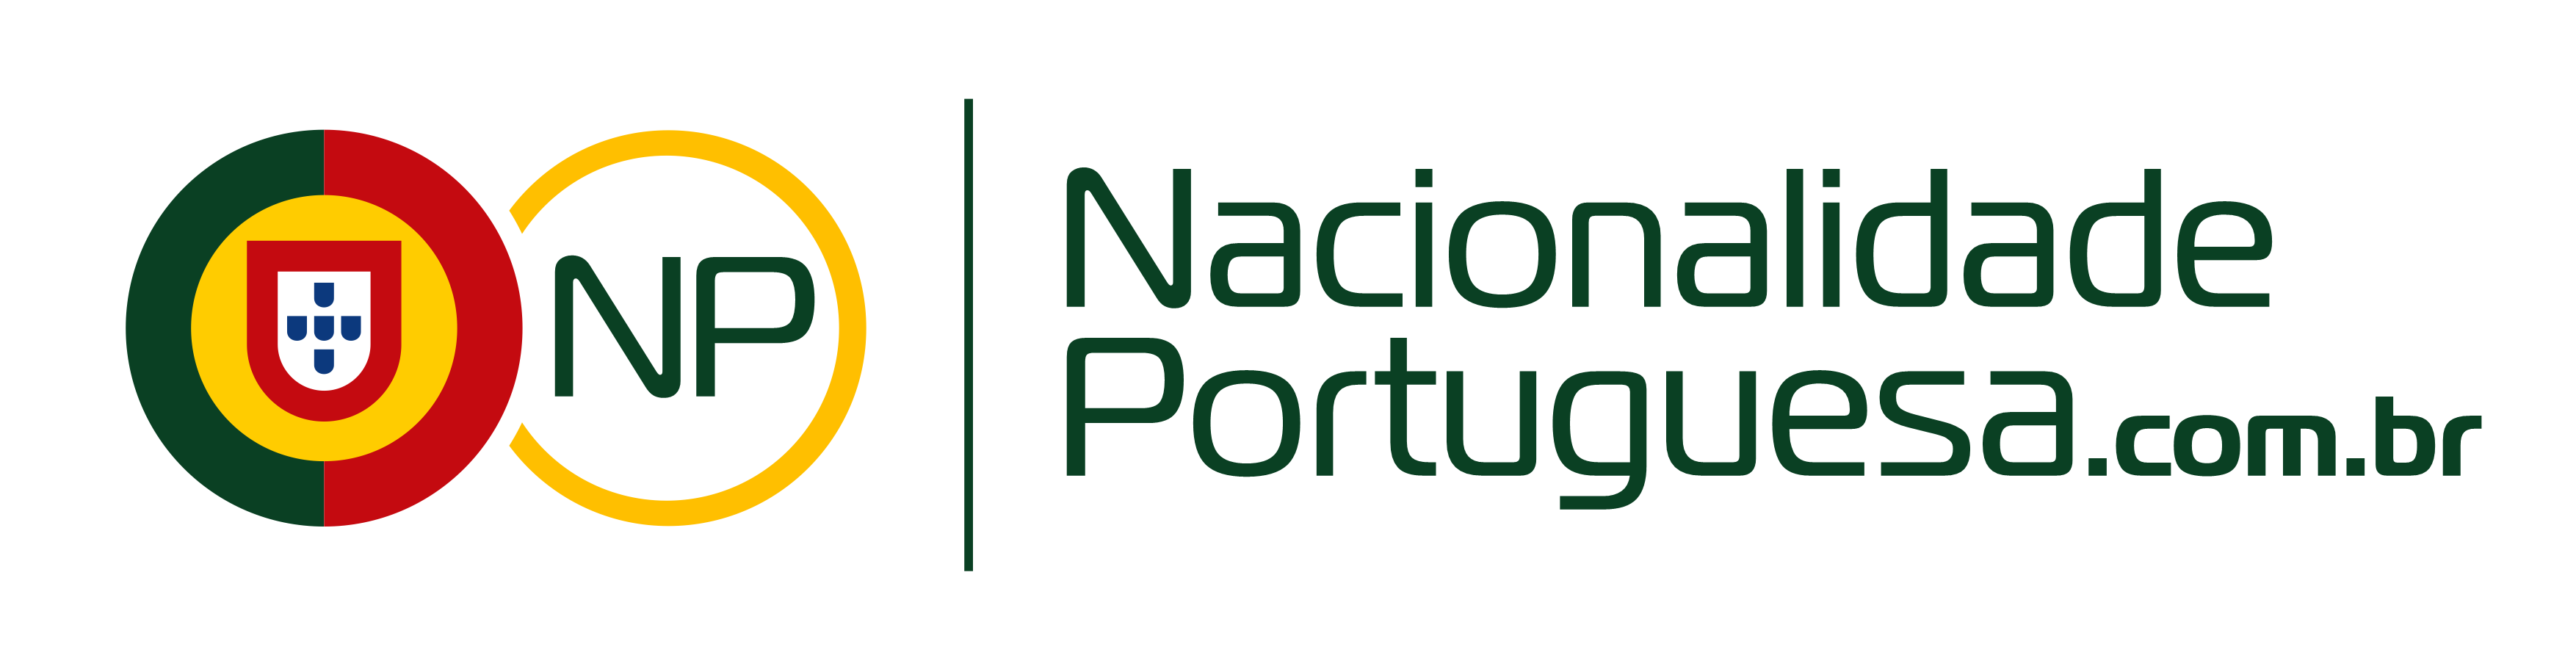 Nacionalidade Portuguesa.com